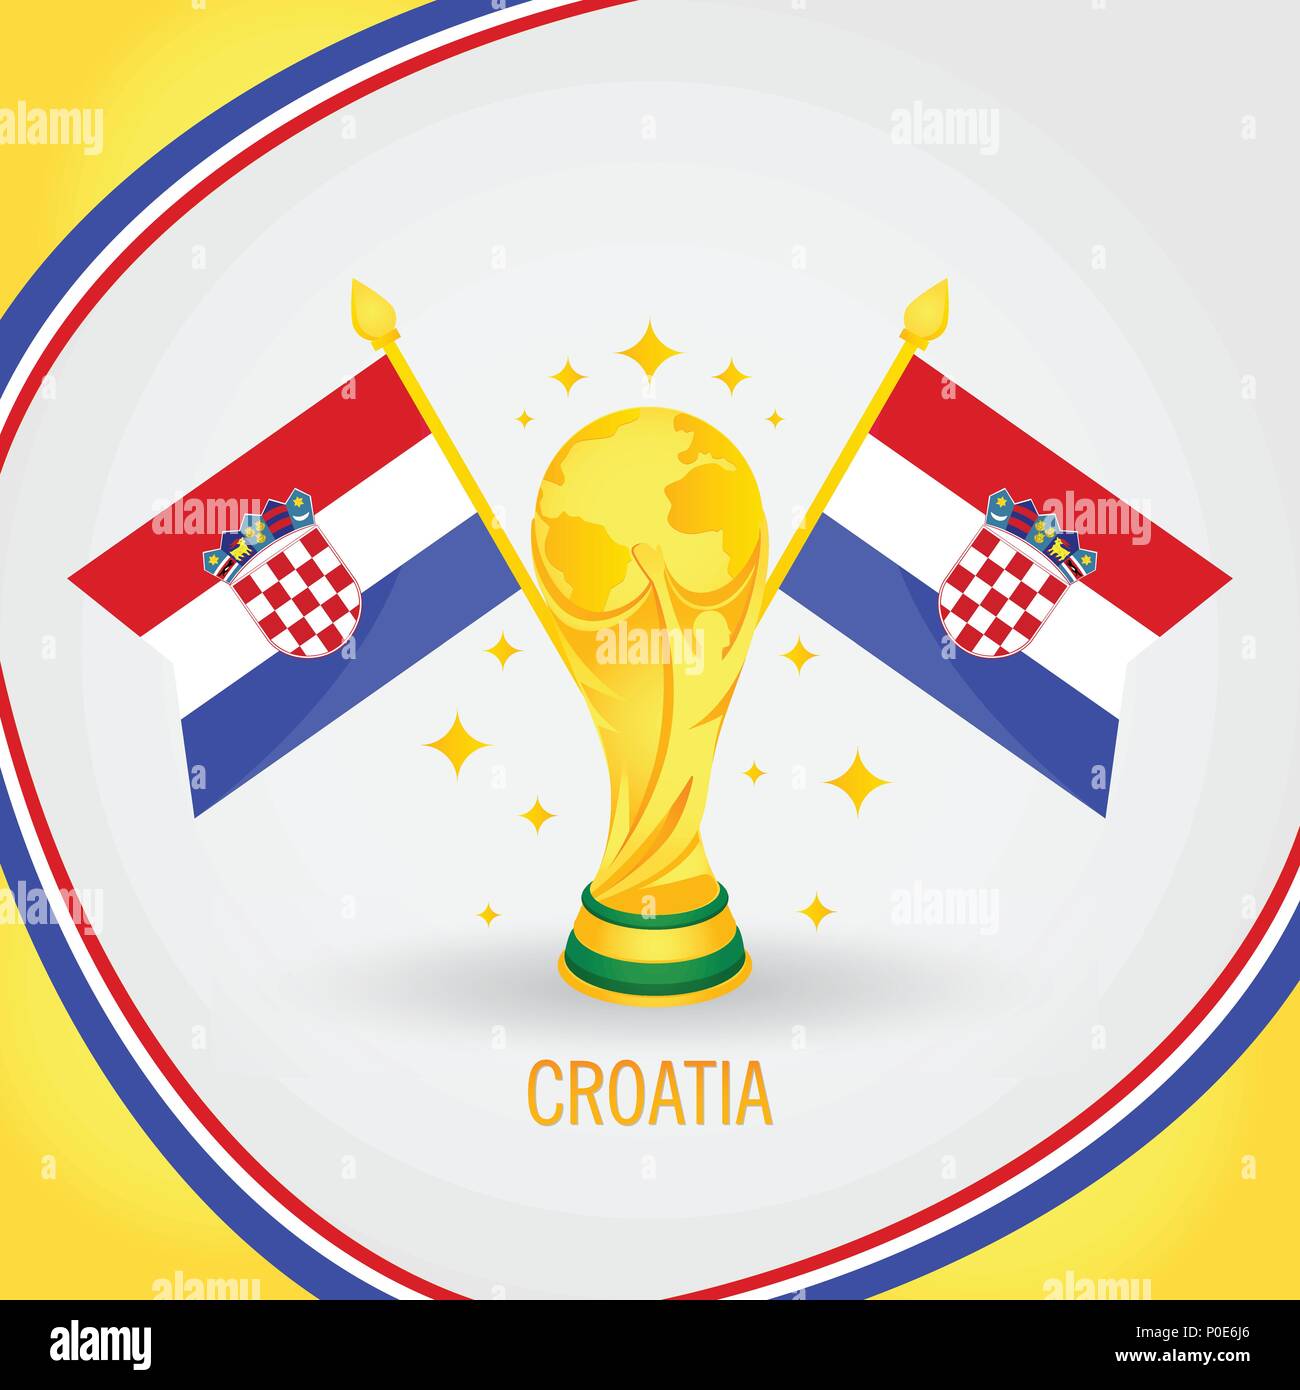 La Croatie Championne de Football World Cup 2018 - Trophée d'or et du pavillon Illustration de Vecteur